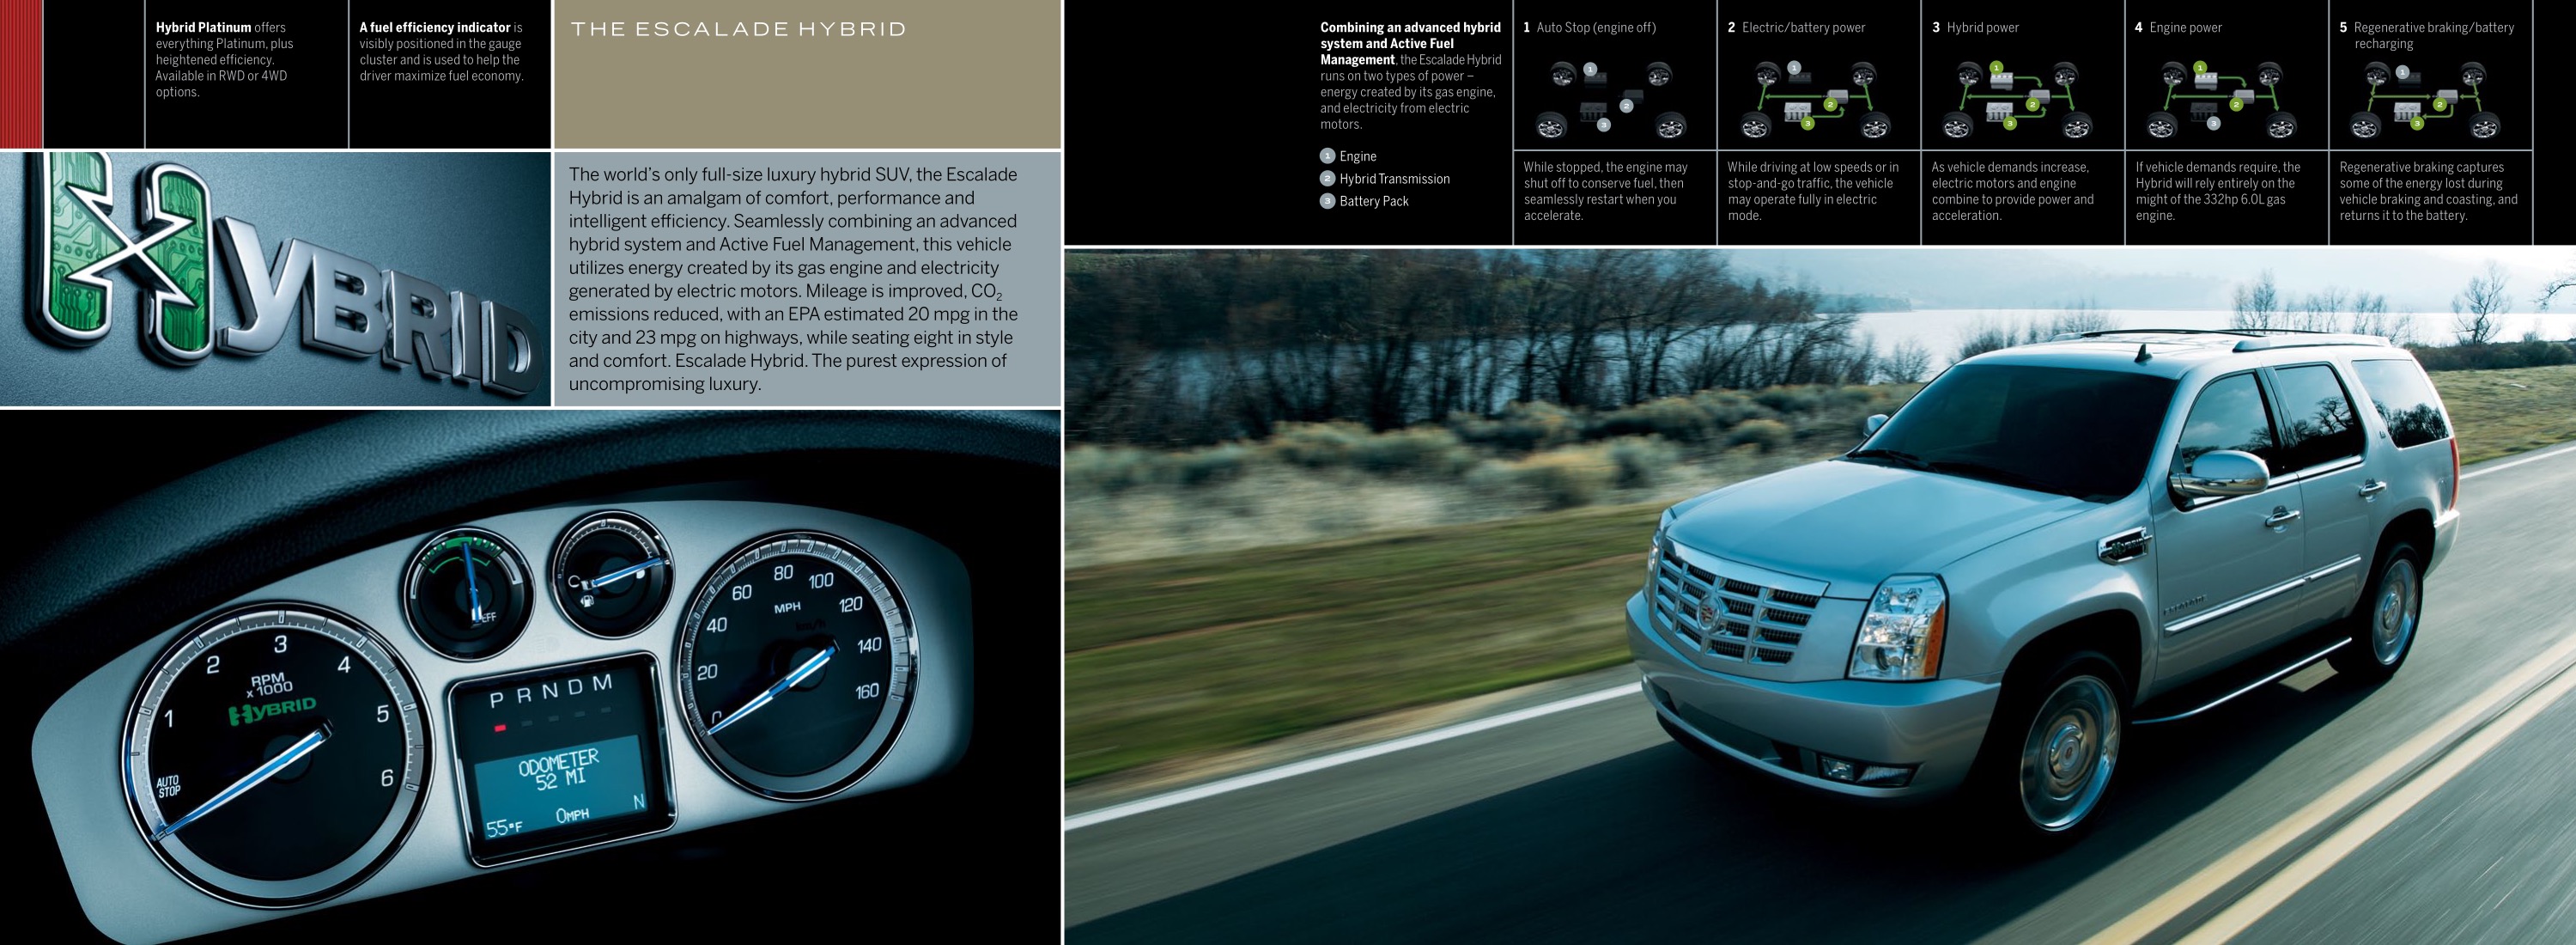 2011 Cadillac Escalade Brochure Page 10